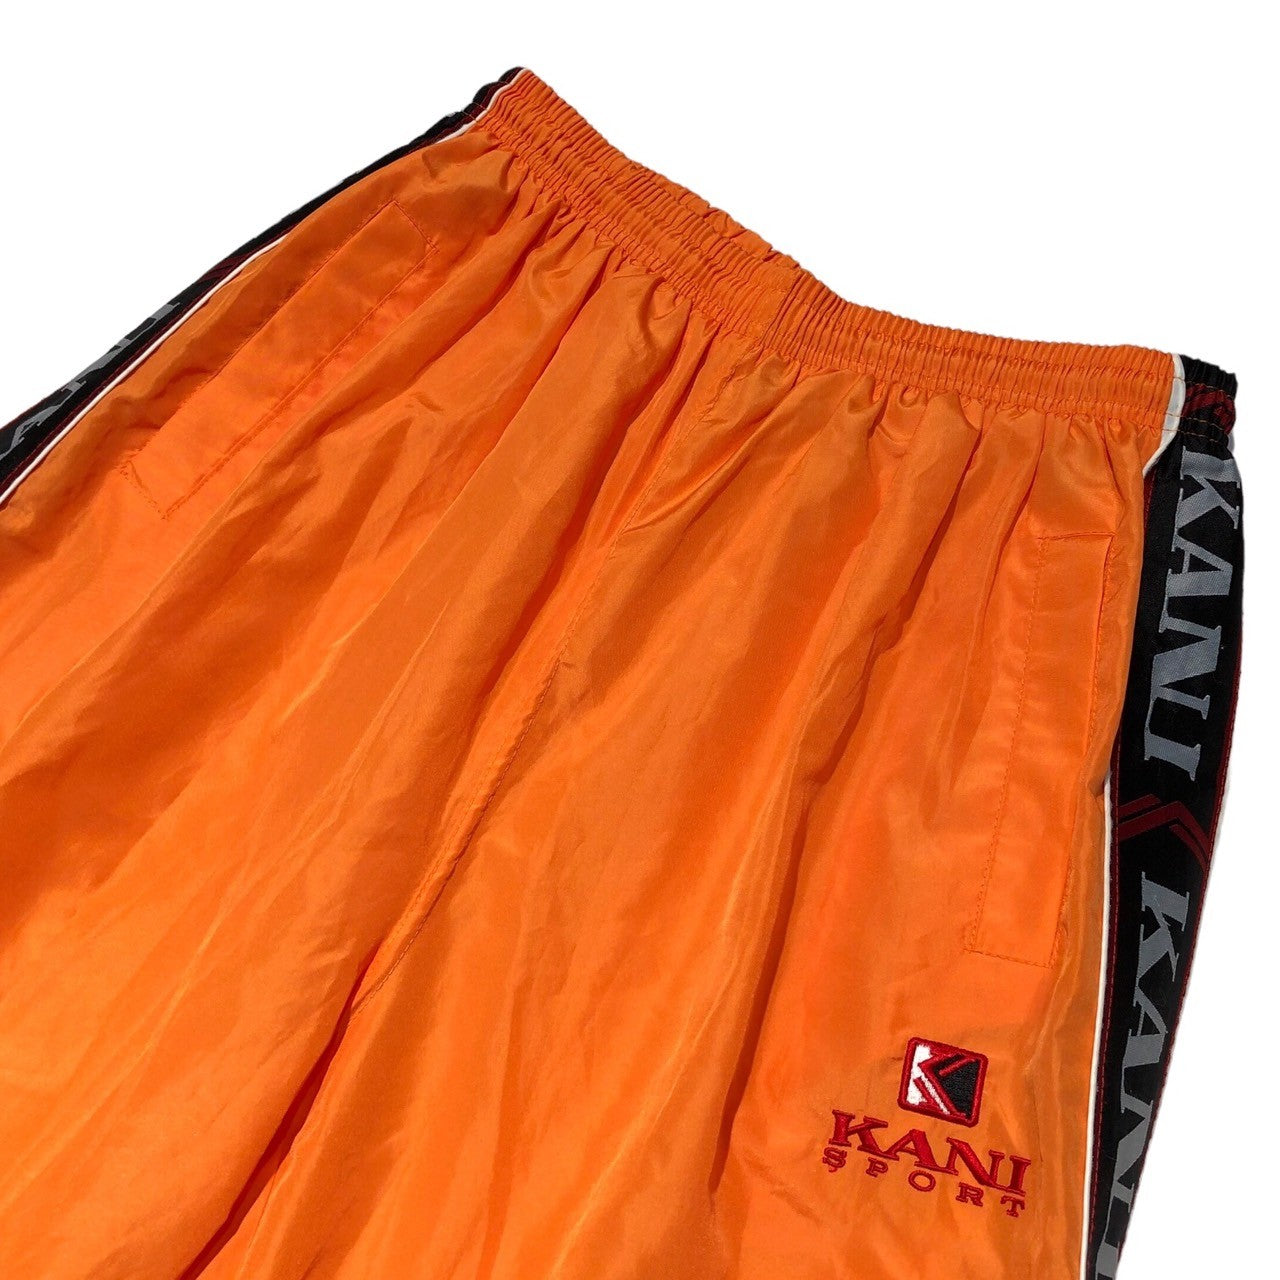 Karl Kani(カールカナイ) 90's Side logo tape nylon track pants サイド ロゴ テープ ナイロン トラック パンツ L オレンジ 90年代